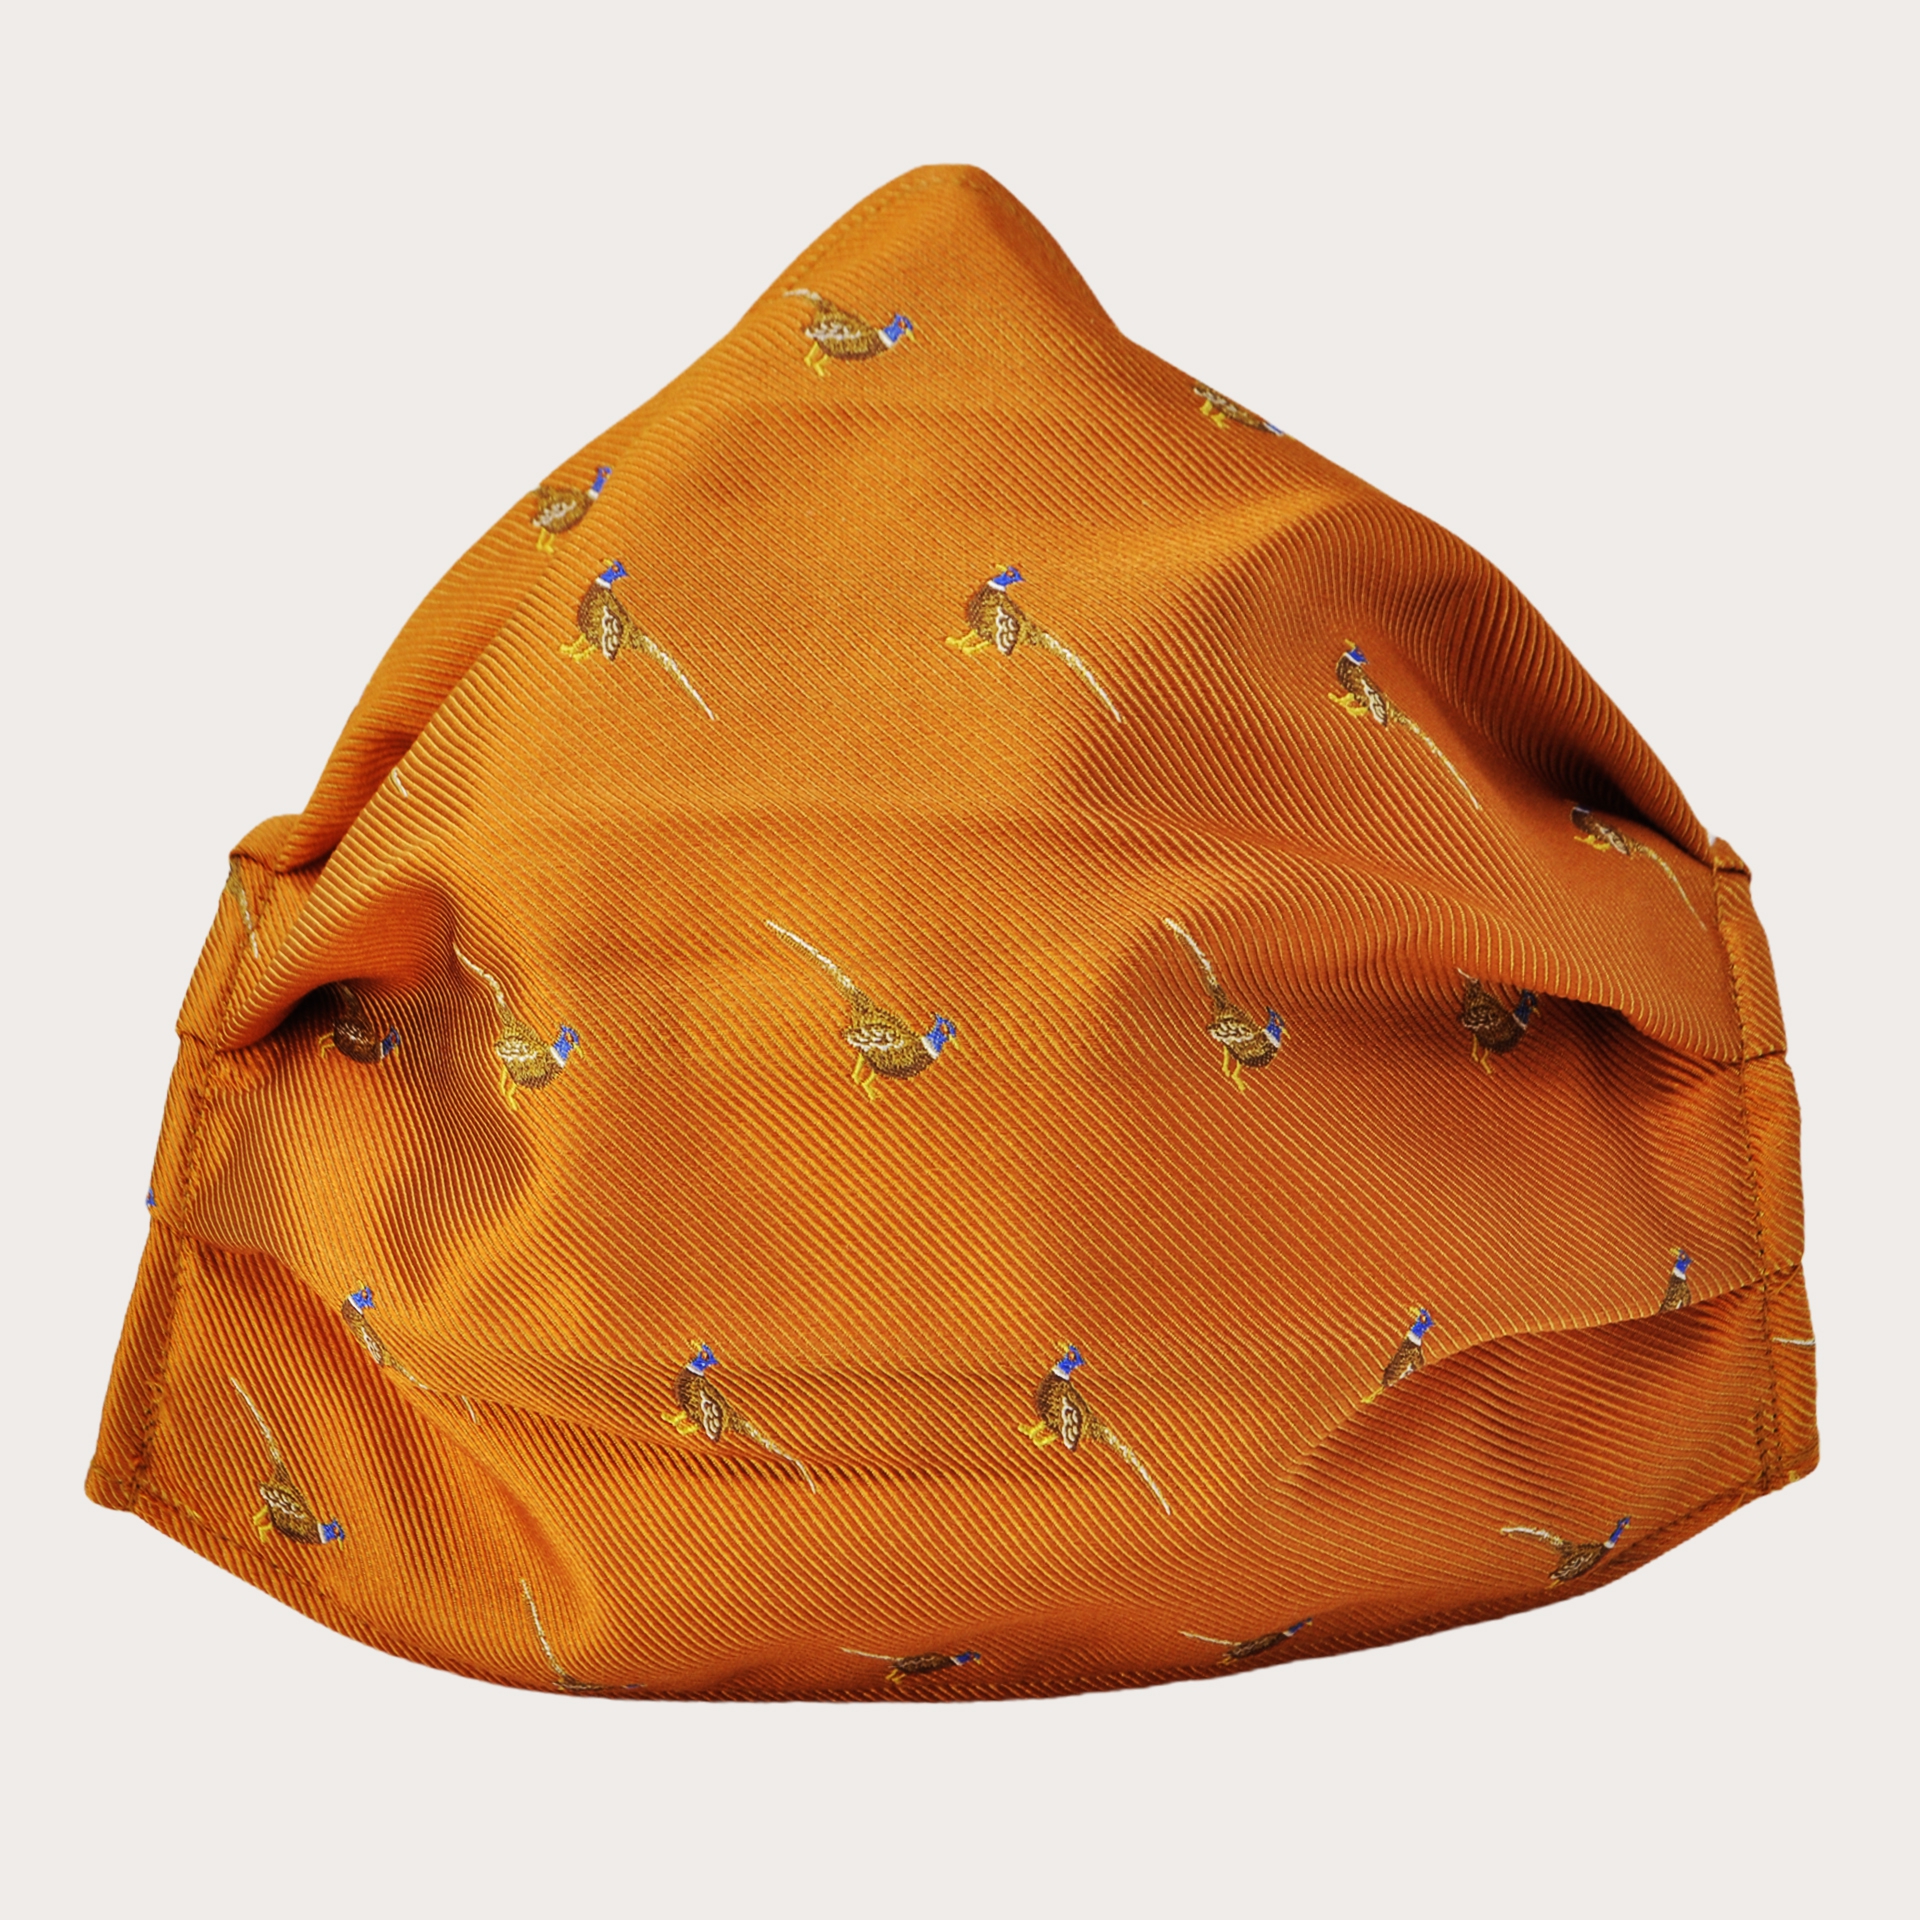 StyleMask Orange Seidenfilter Gesichtsmaske mit Fasanen